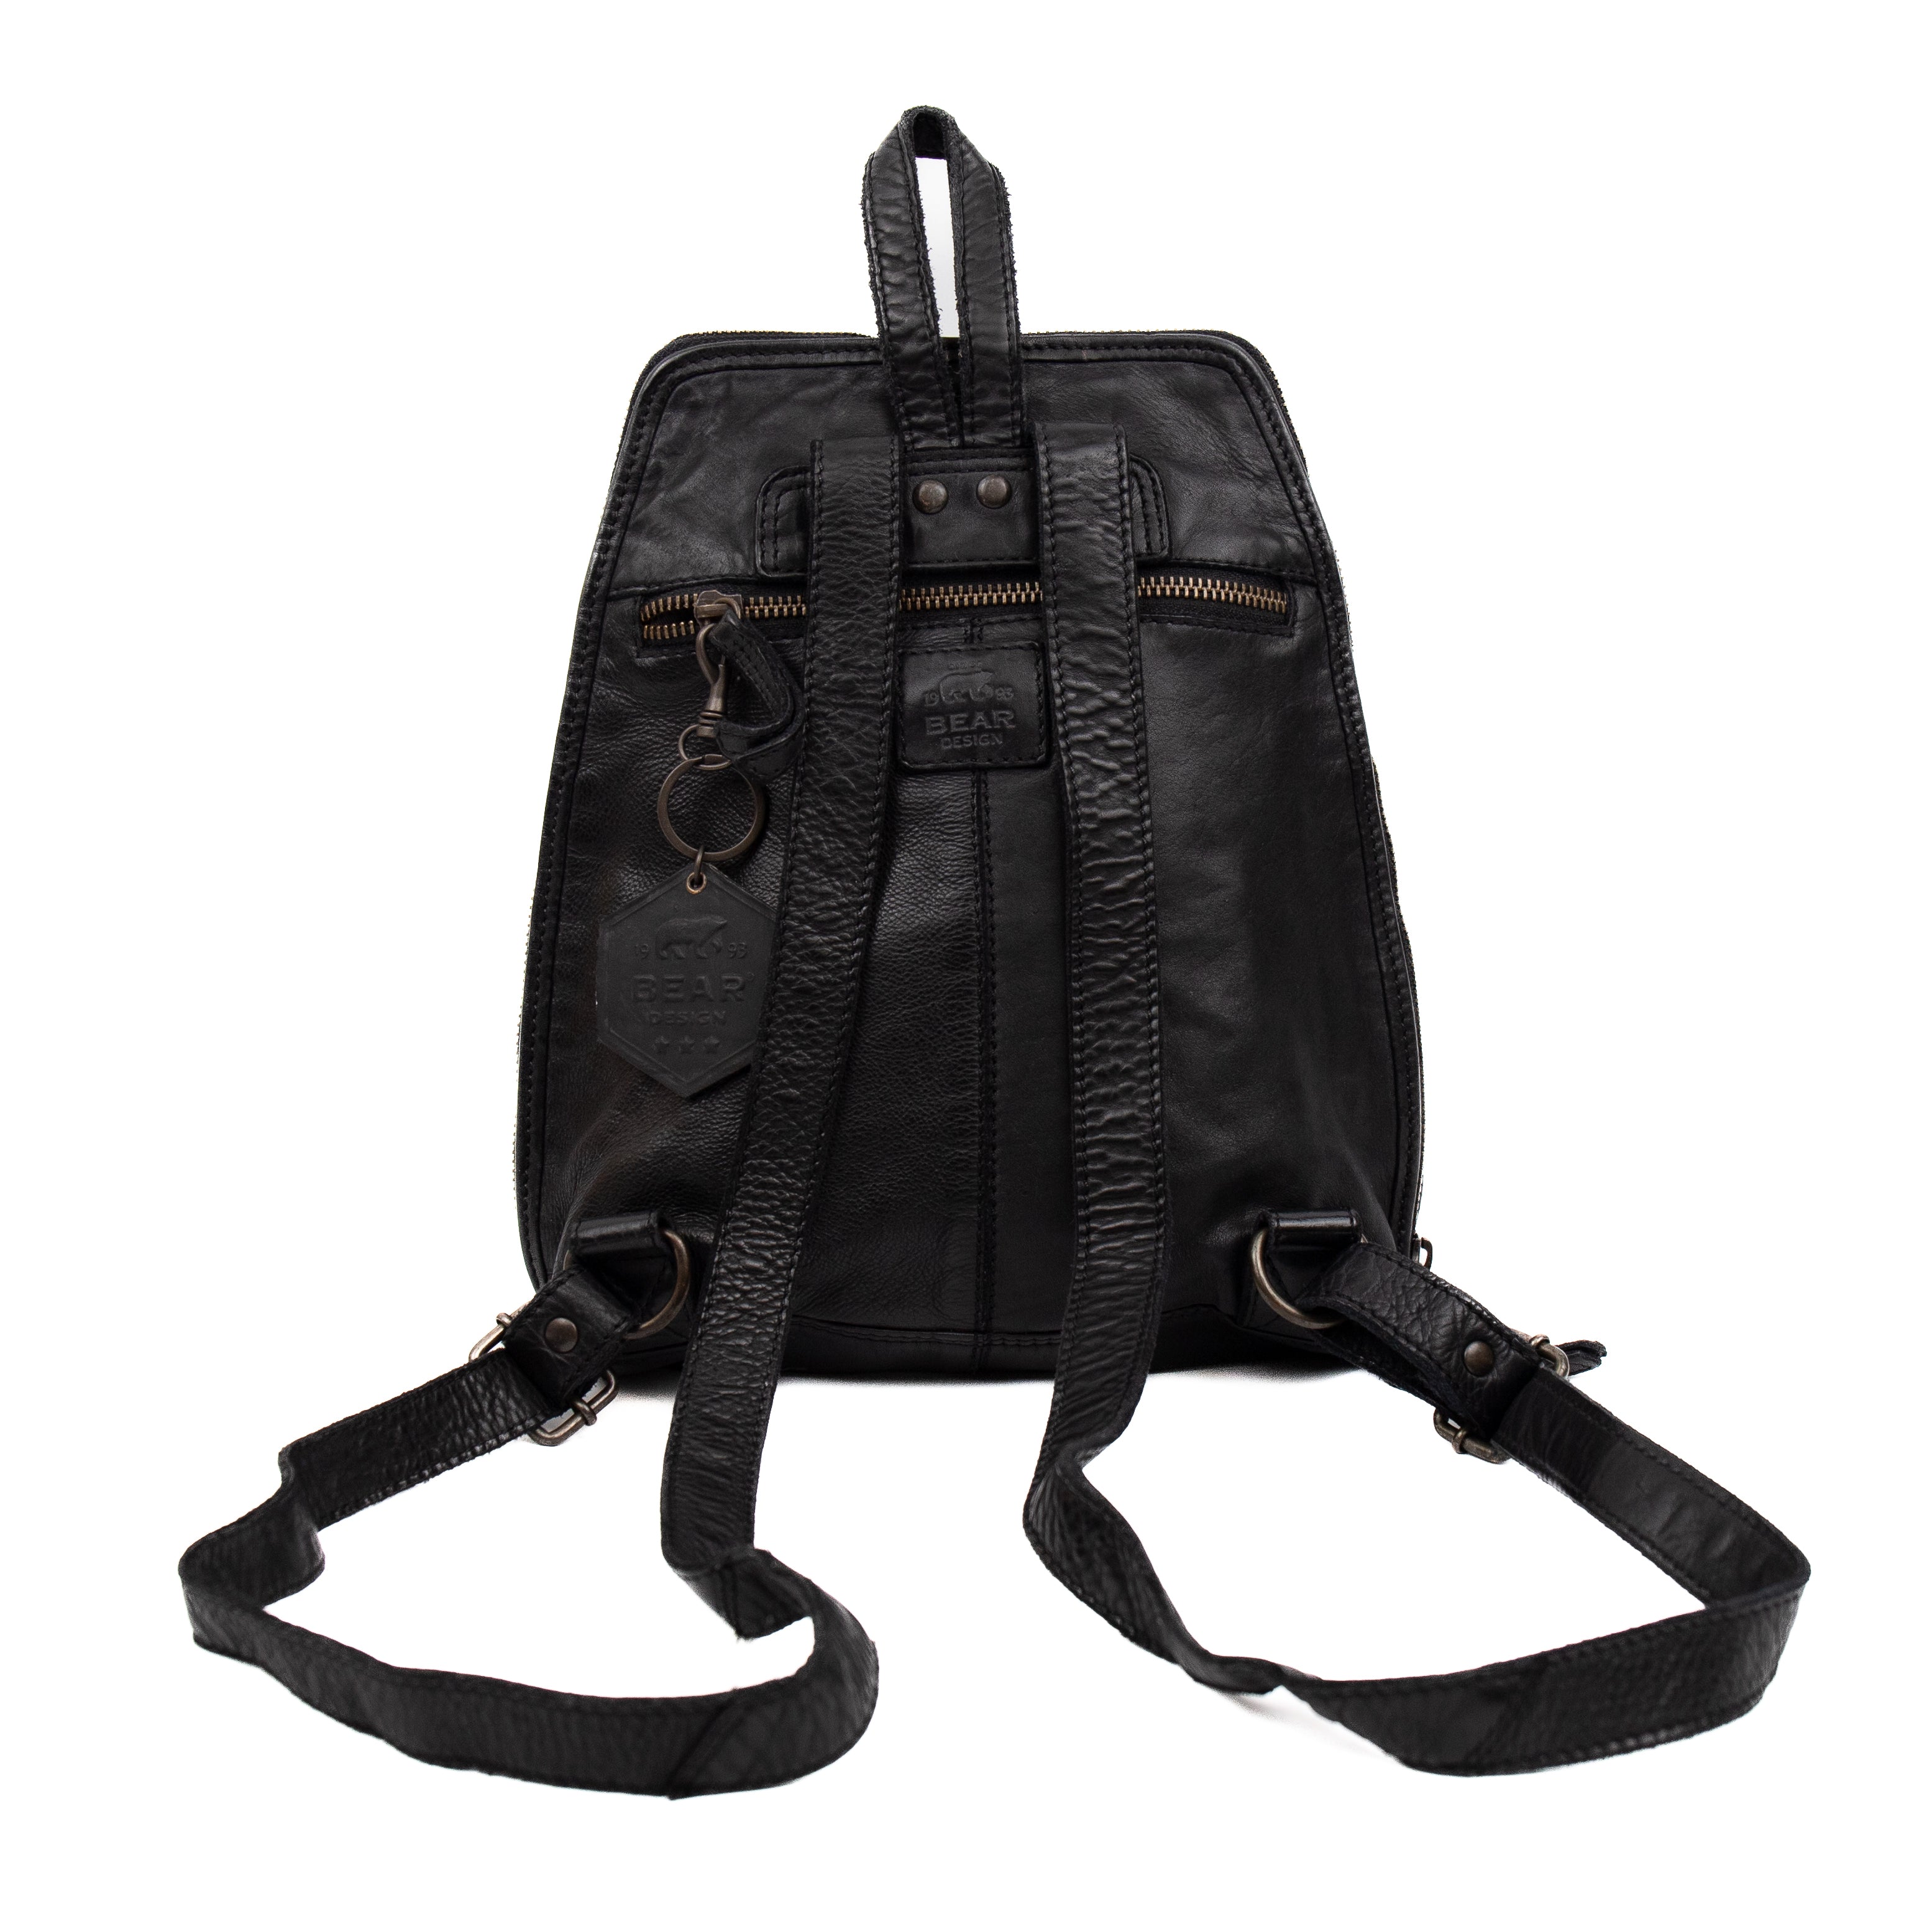 Backpack 'Iris' black - CL 32852